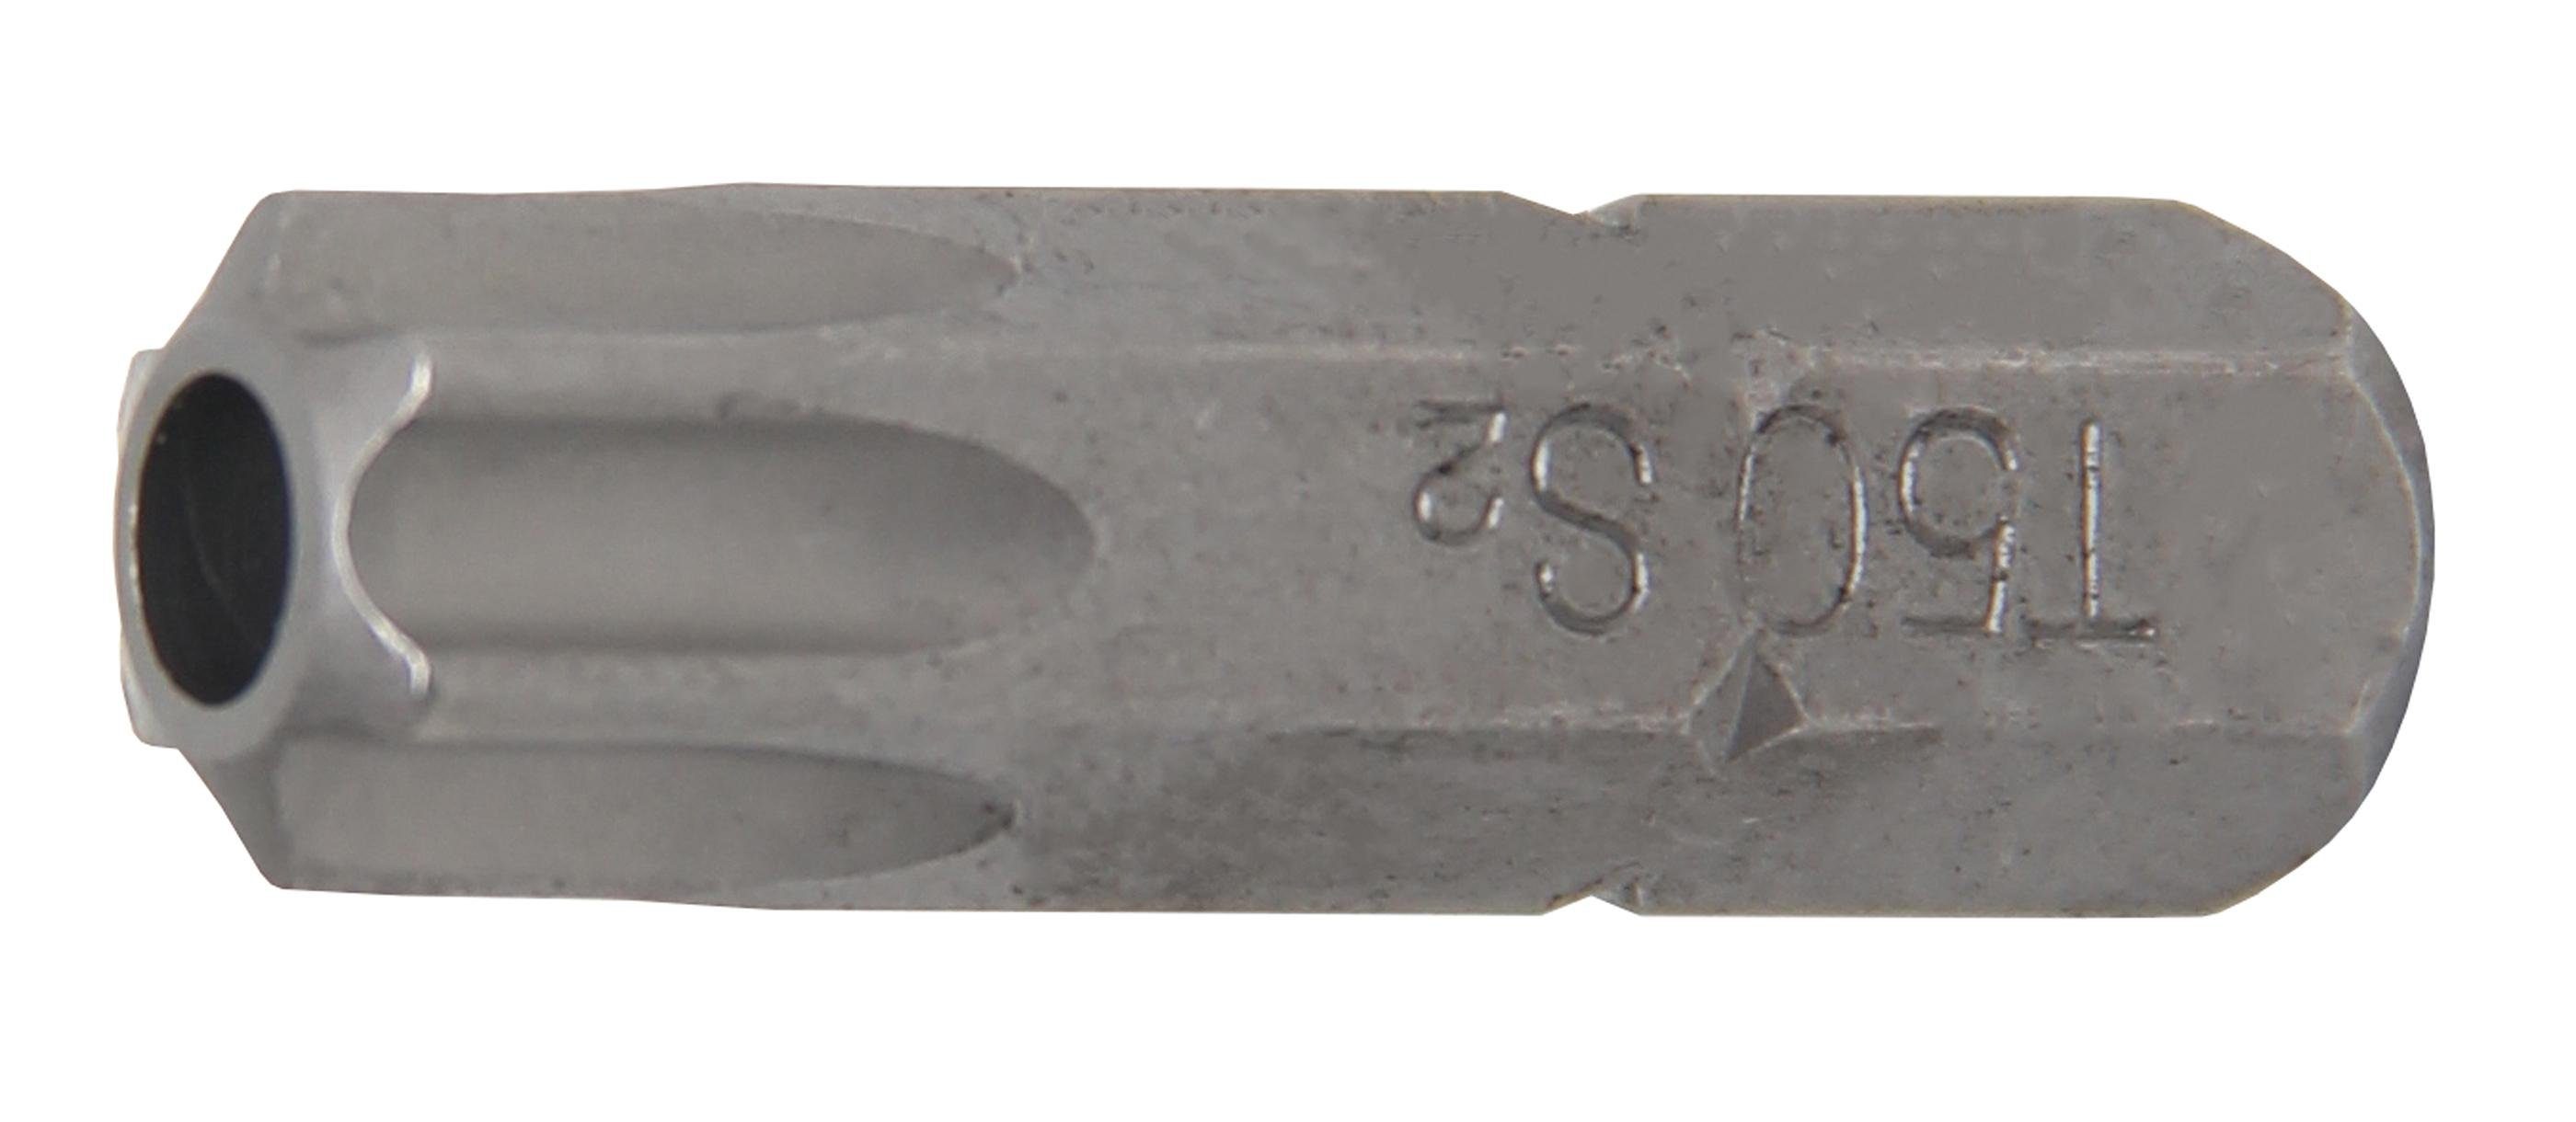 BGS technic Bit-Schraubendreher Bit, Länge 30 mm, Antrieb Außensechskant 8 mm (5/16), T-Profil (für Torx) mit Bohrung T50 | Schraubendreher